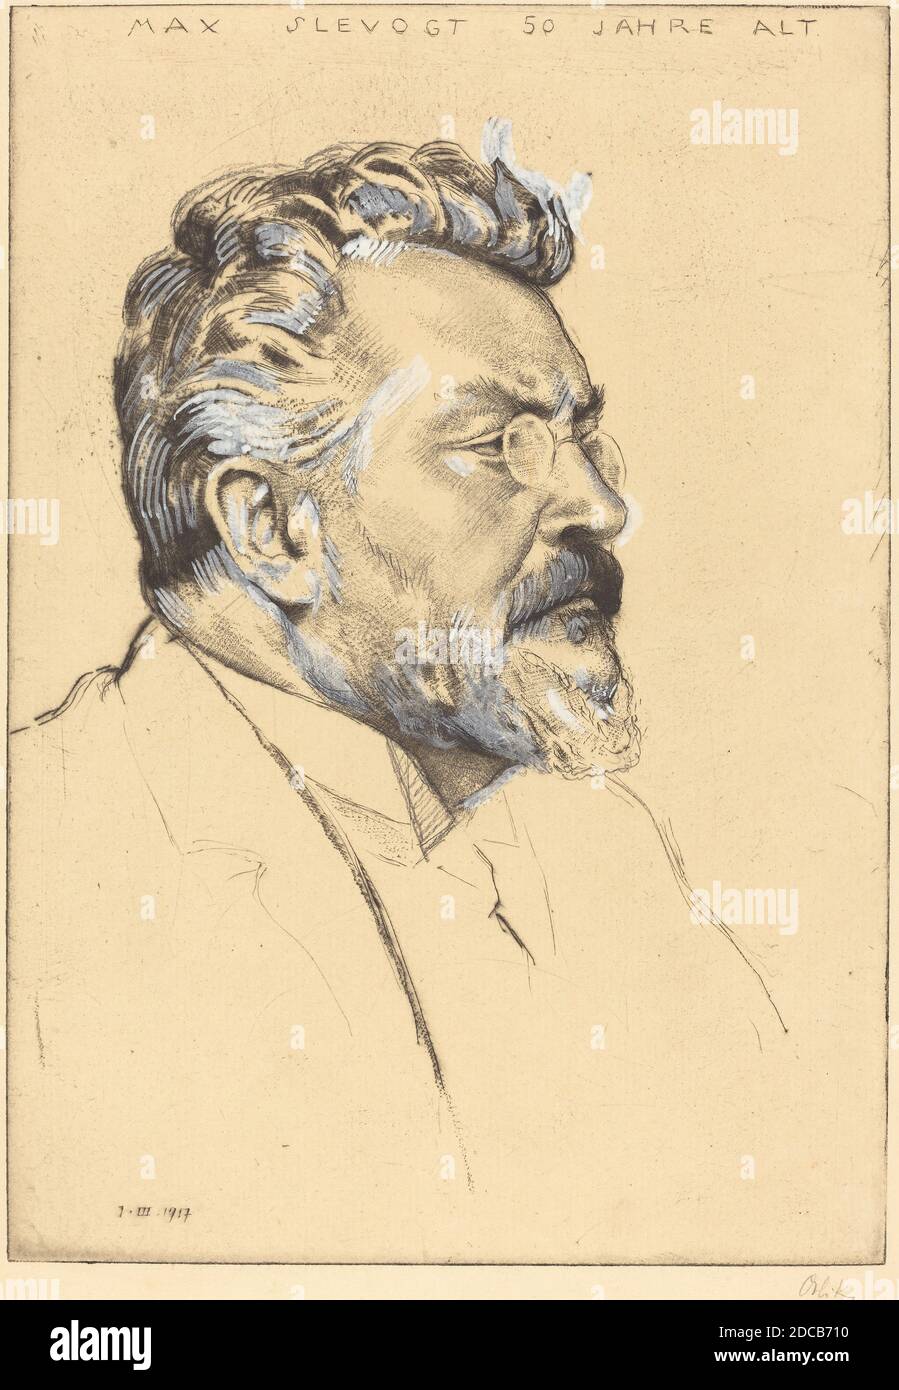 Emil Orlik, (artiste), allemand, 1870 - 1932, Max Slevogt, 1917, pointe sèche et bascule en graphite et en blanc sur papier posé, plaque: 26.7 x 18.6 cm (10 1/2 x 7 5/16 in.), feuille: 34.1 x 25.7 cm (13 7/16 x 10 1/8 in Banque D'Images